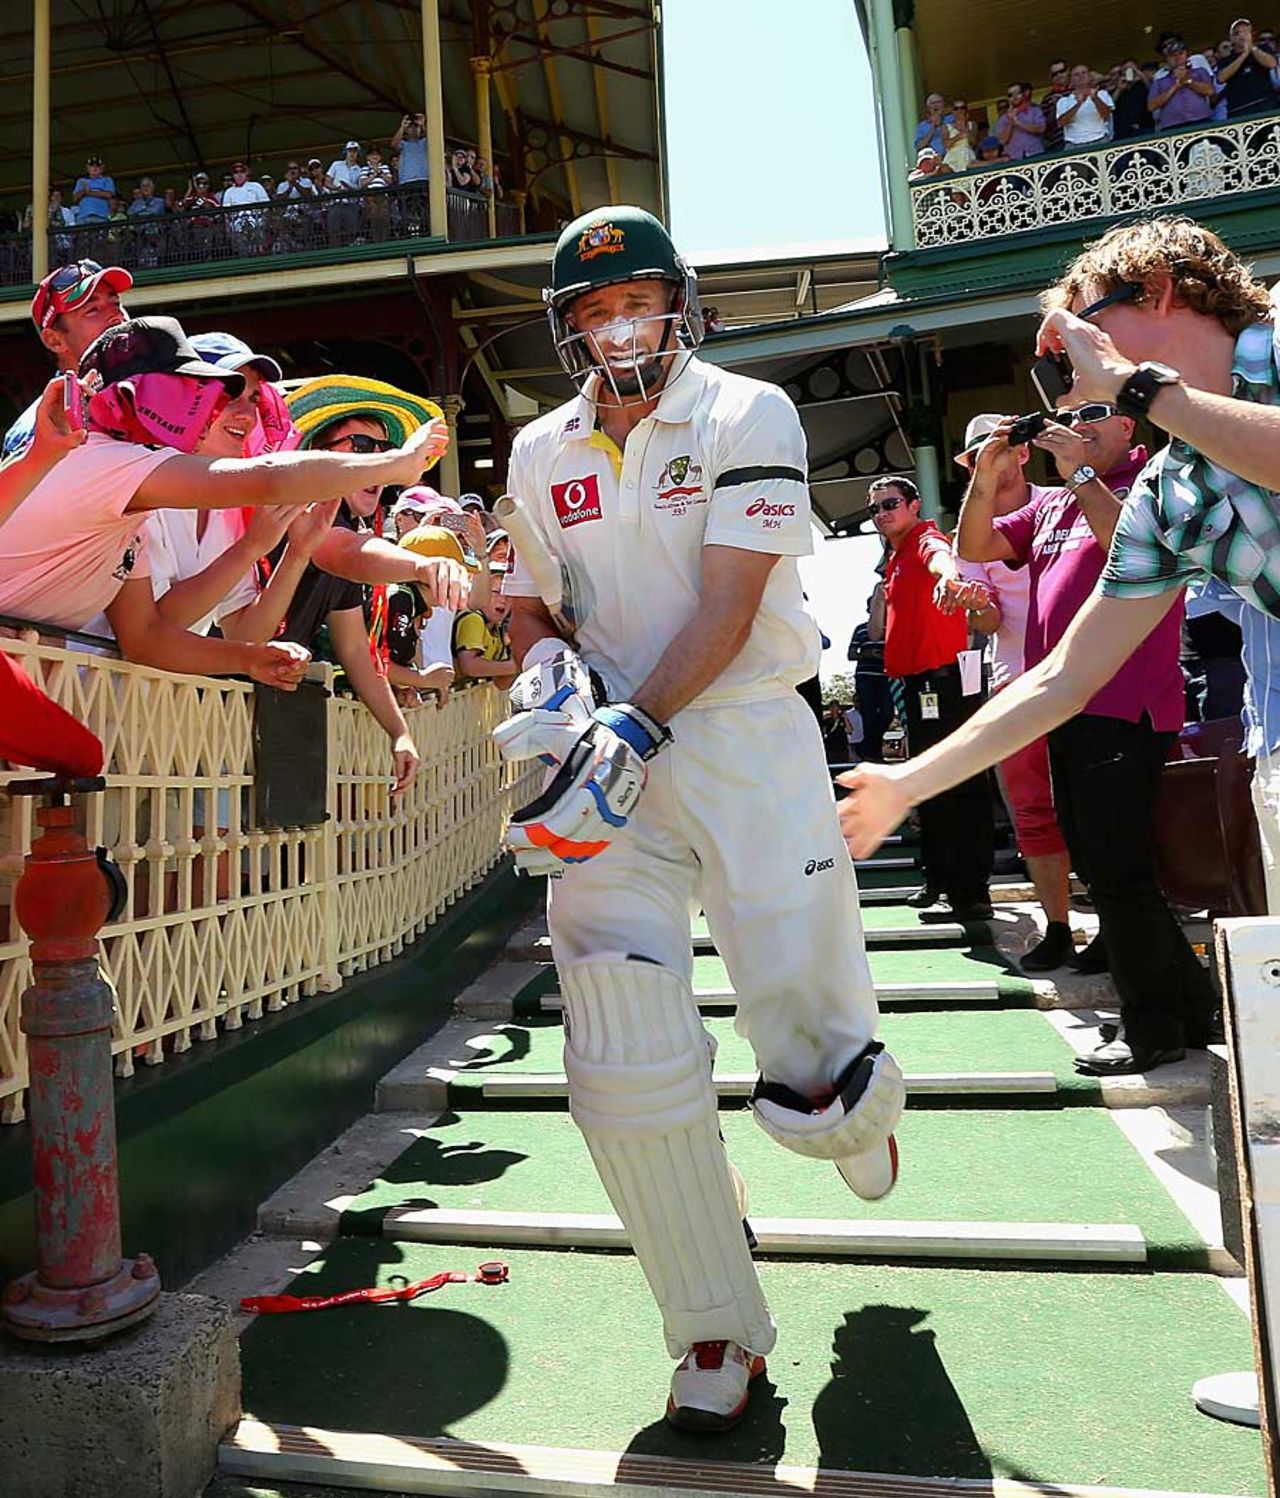 Michael Hussey walks in for his final Test innings, Australia v Sri Lanka, 3rd Test, Sydney, 4th day, January 6, 2013